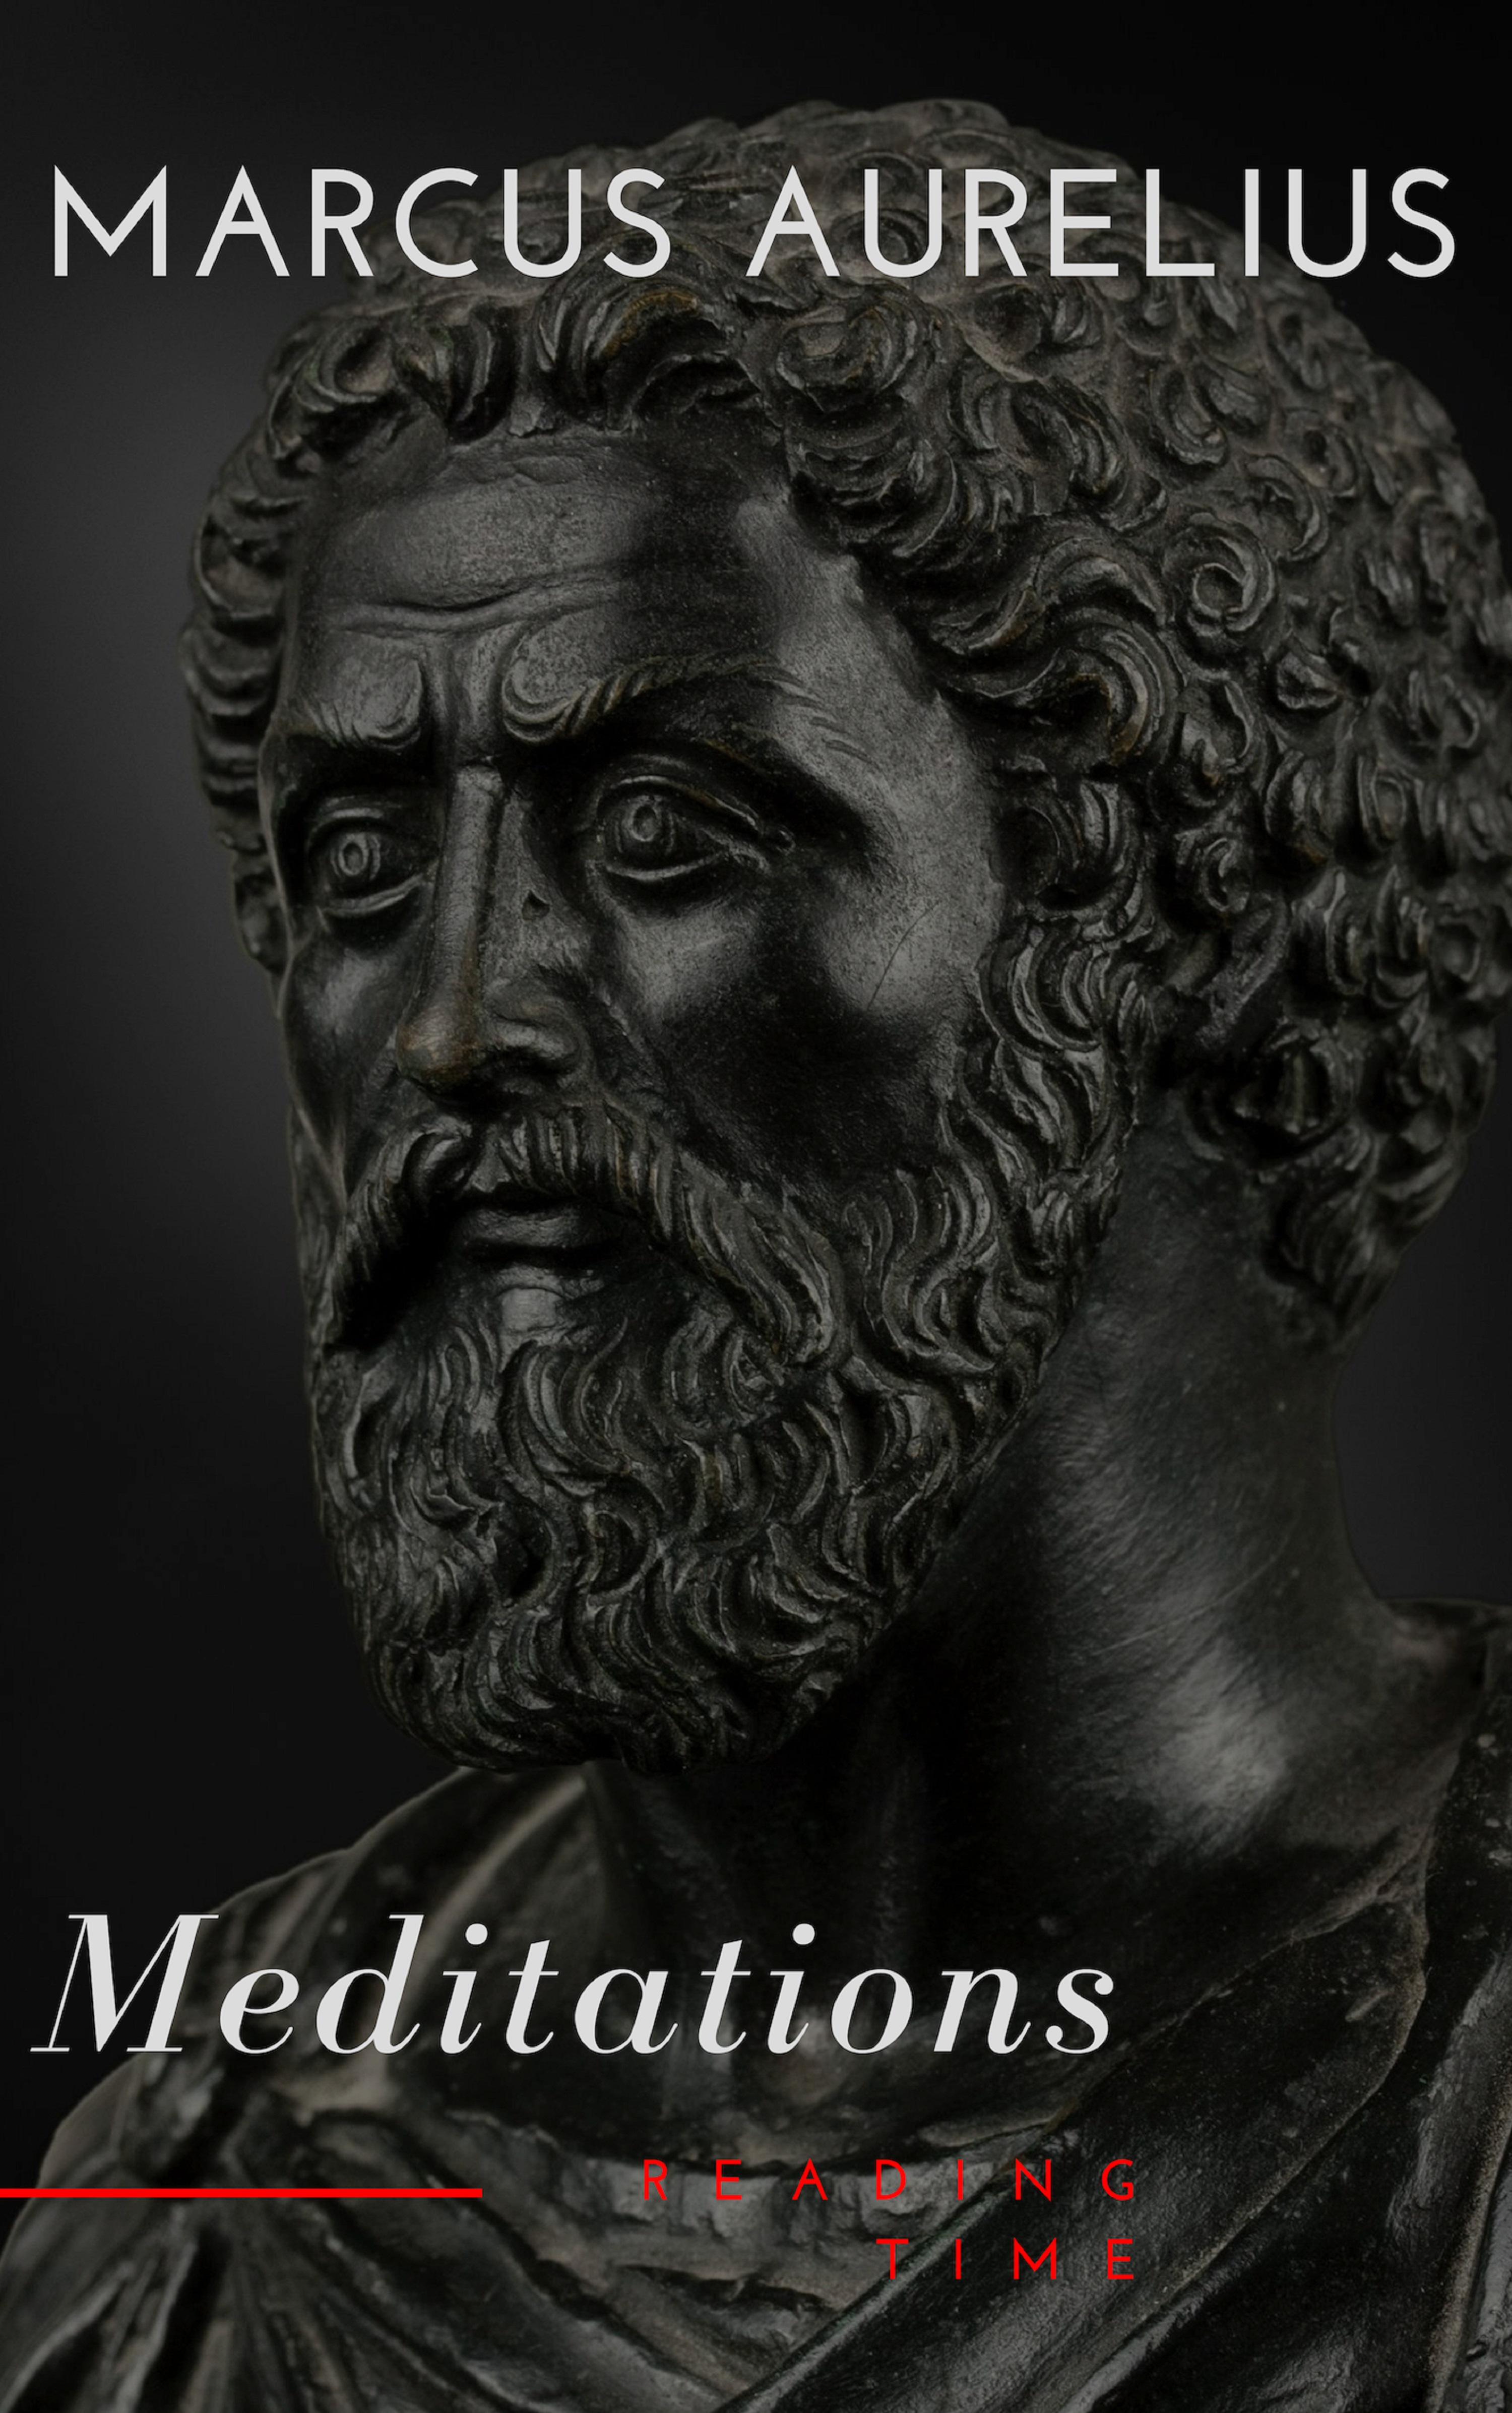 Marcus Aurelius, Meditations download epub, mobi, pdf at